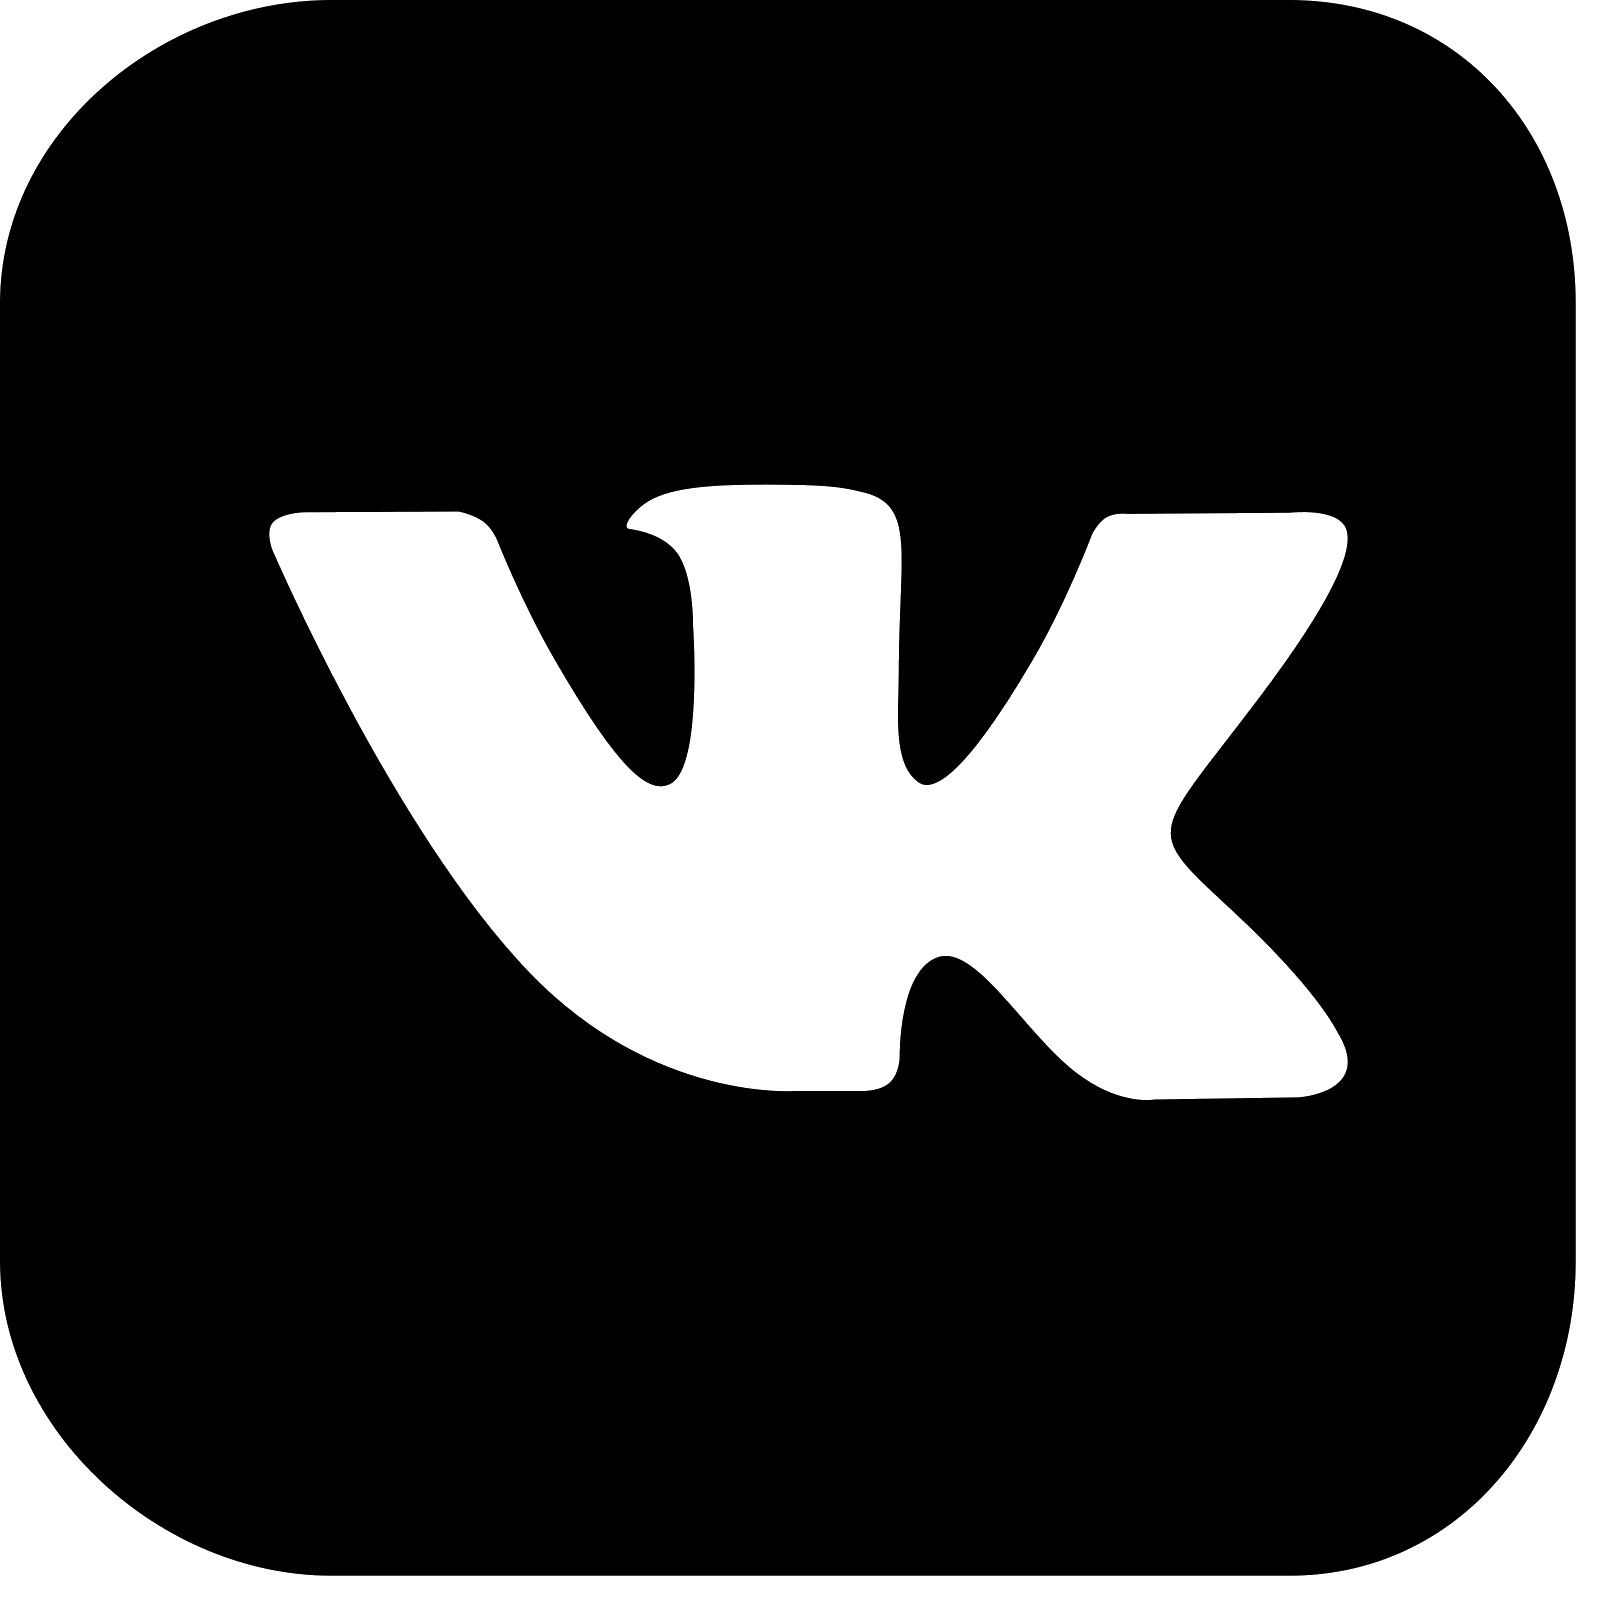 Логотип ВК. Маленький значок ВК. Логотип ВК черный. Логотип ВК на прозрачном фоне. Vk talk